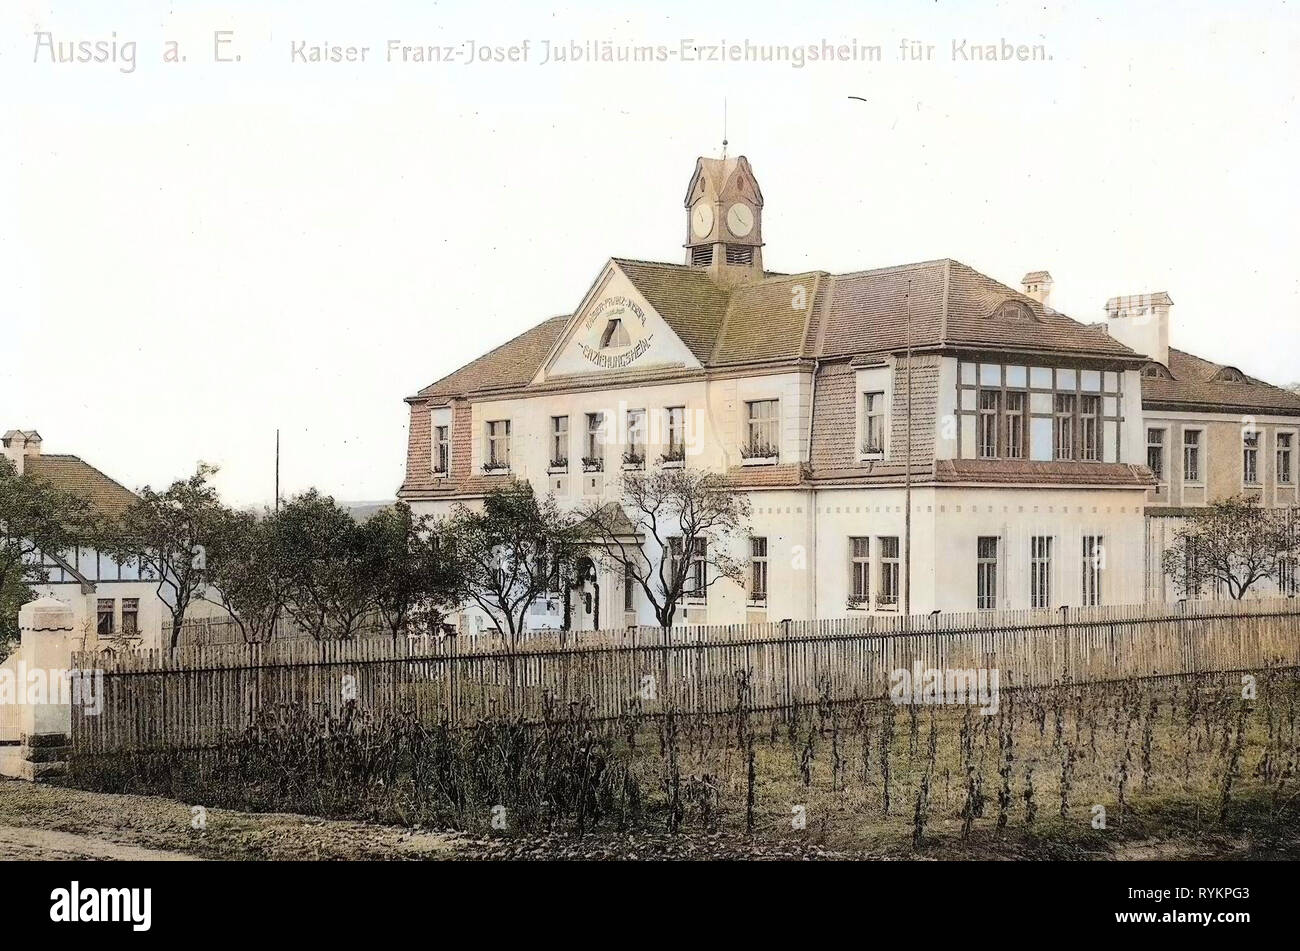 Gebäude in Ústí nad Labem, Häuser für Kinder in der Tschechischen Republik, 1913, Aussig, Aussig, Kaiser Franz Josef, Erziehungsheim für Knaben Stockfoto